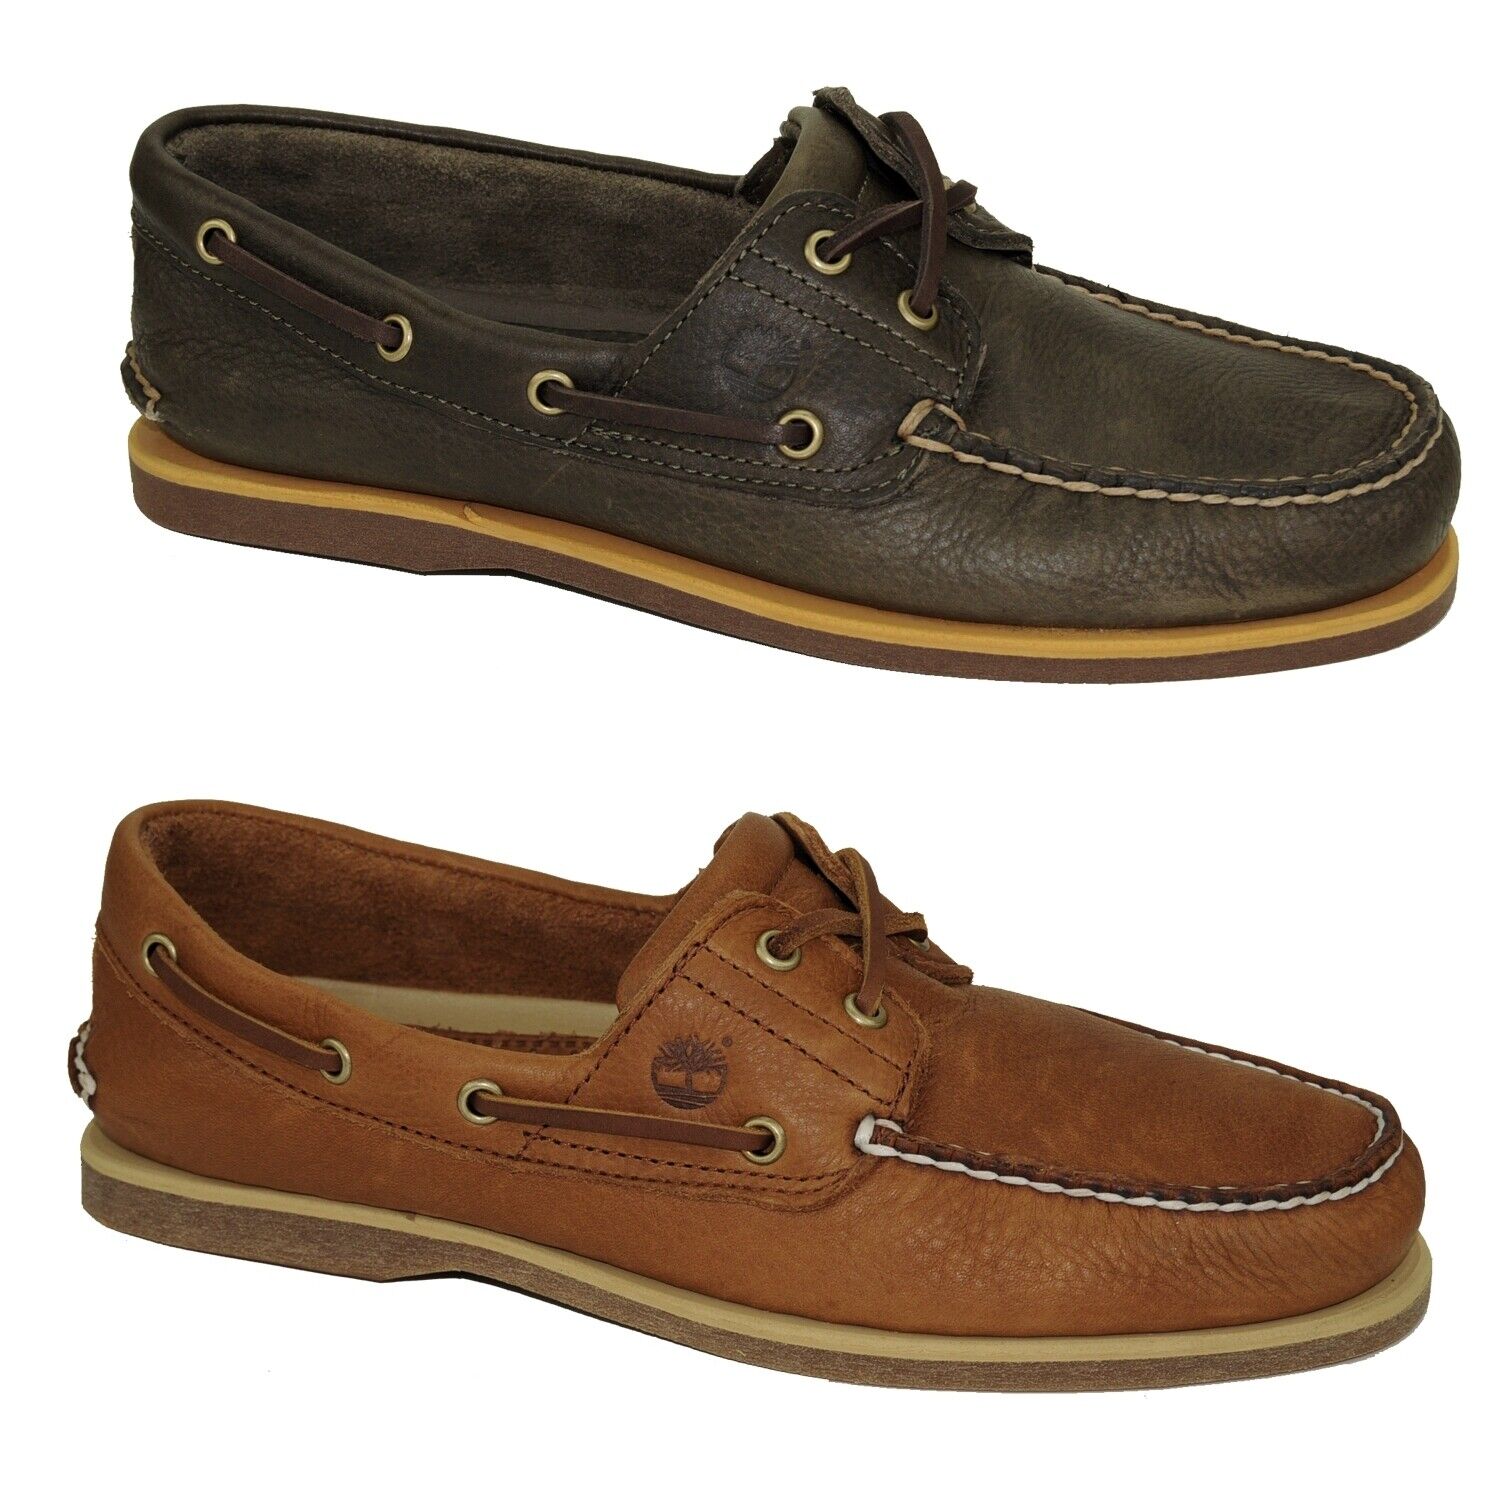 Timberland Classic Boat Shoes 2-Eye Deckschuhe Segelschuhe Herren Schuhe Modell- Farbe A2AFC - Olive Schuhgröße EUR 43,5 US 9,5